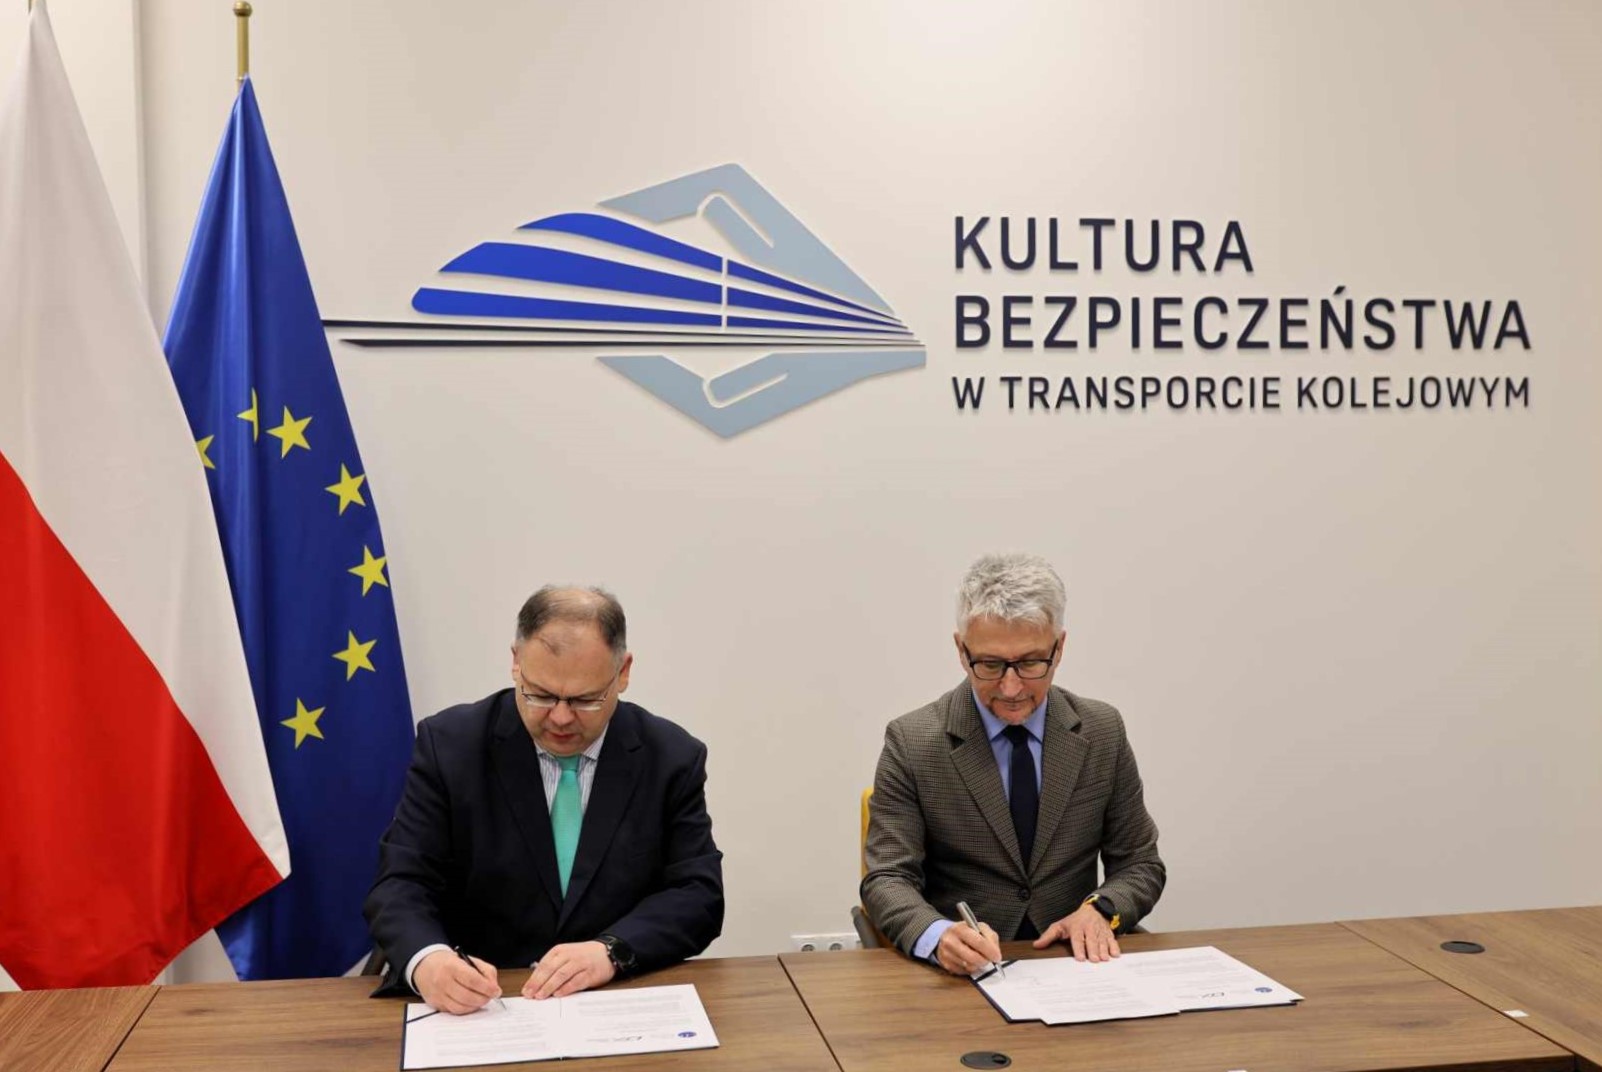 Piotr Samson, Prezes ULC oraz Ignacy Góra, Prezes UTK  podpisują list intencyjny